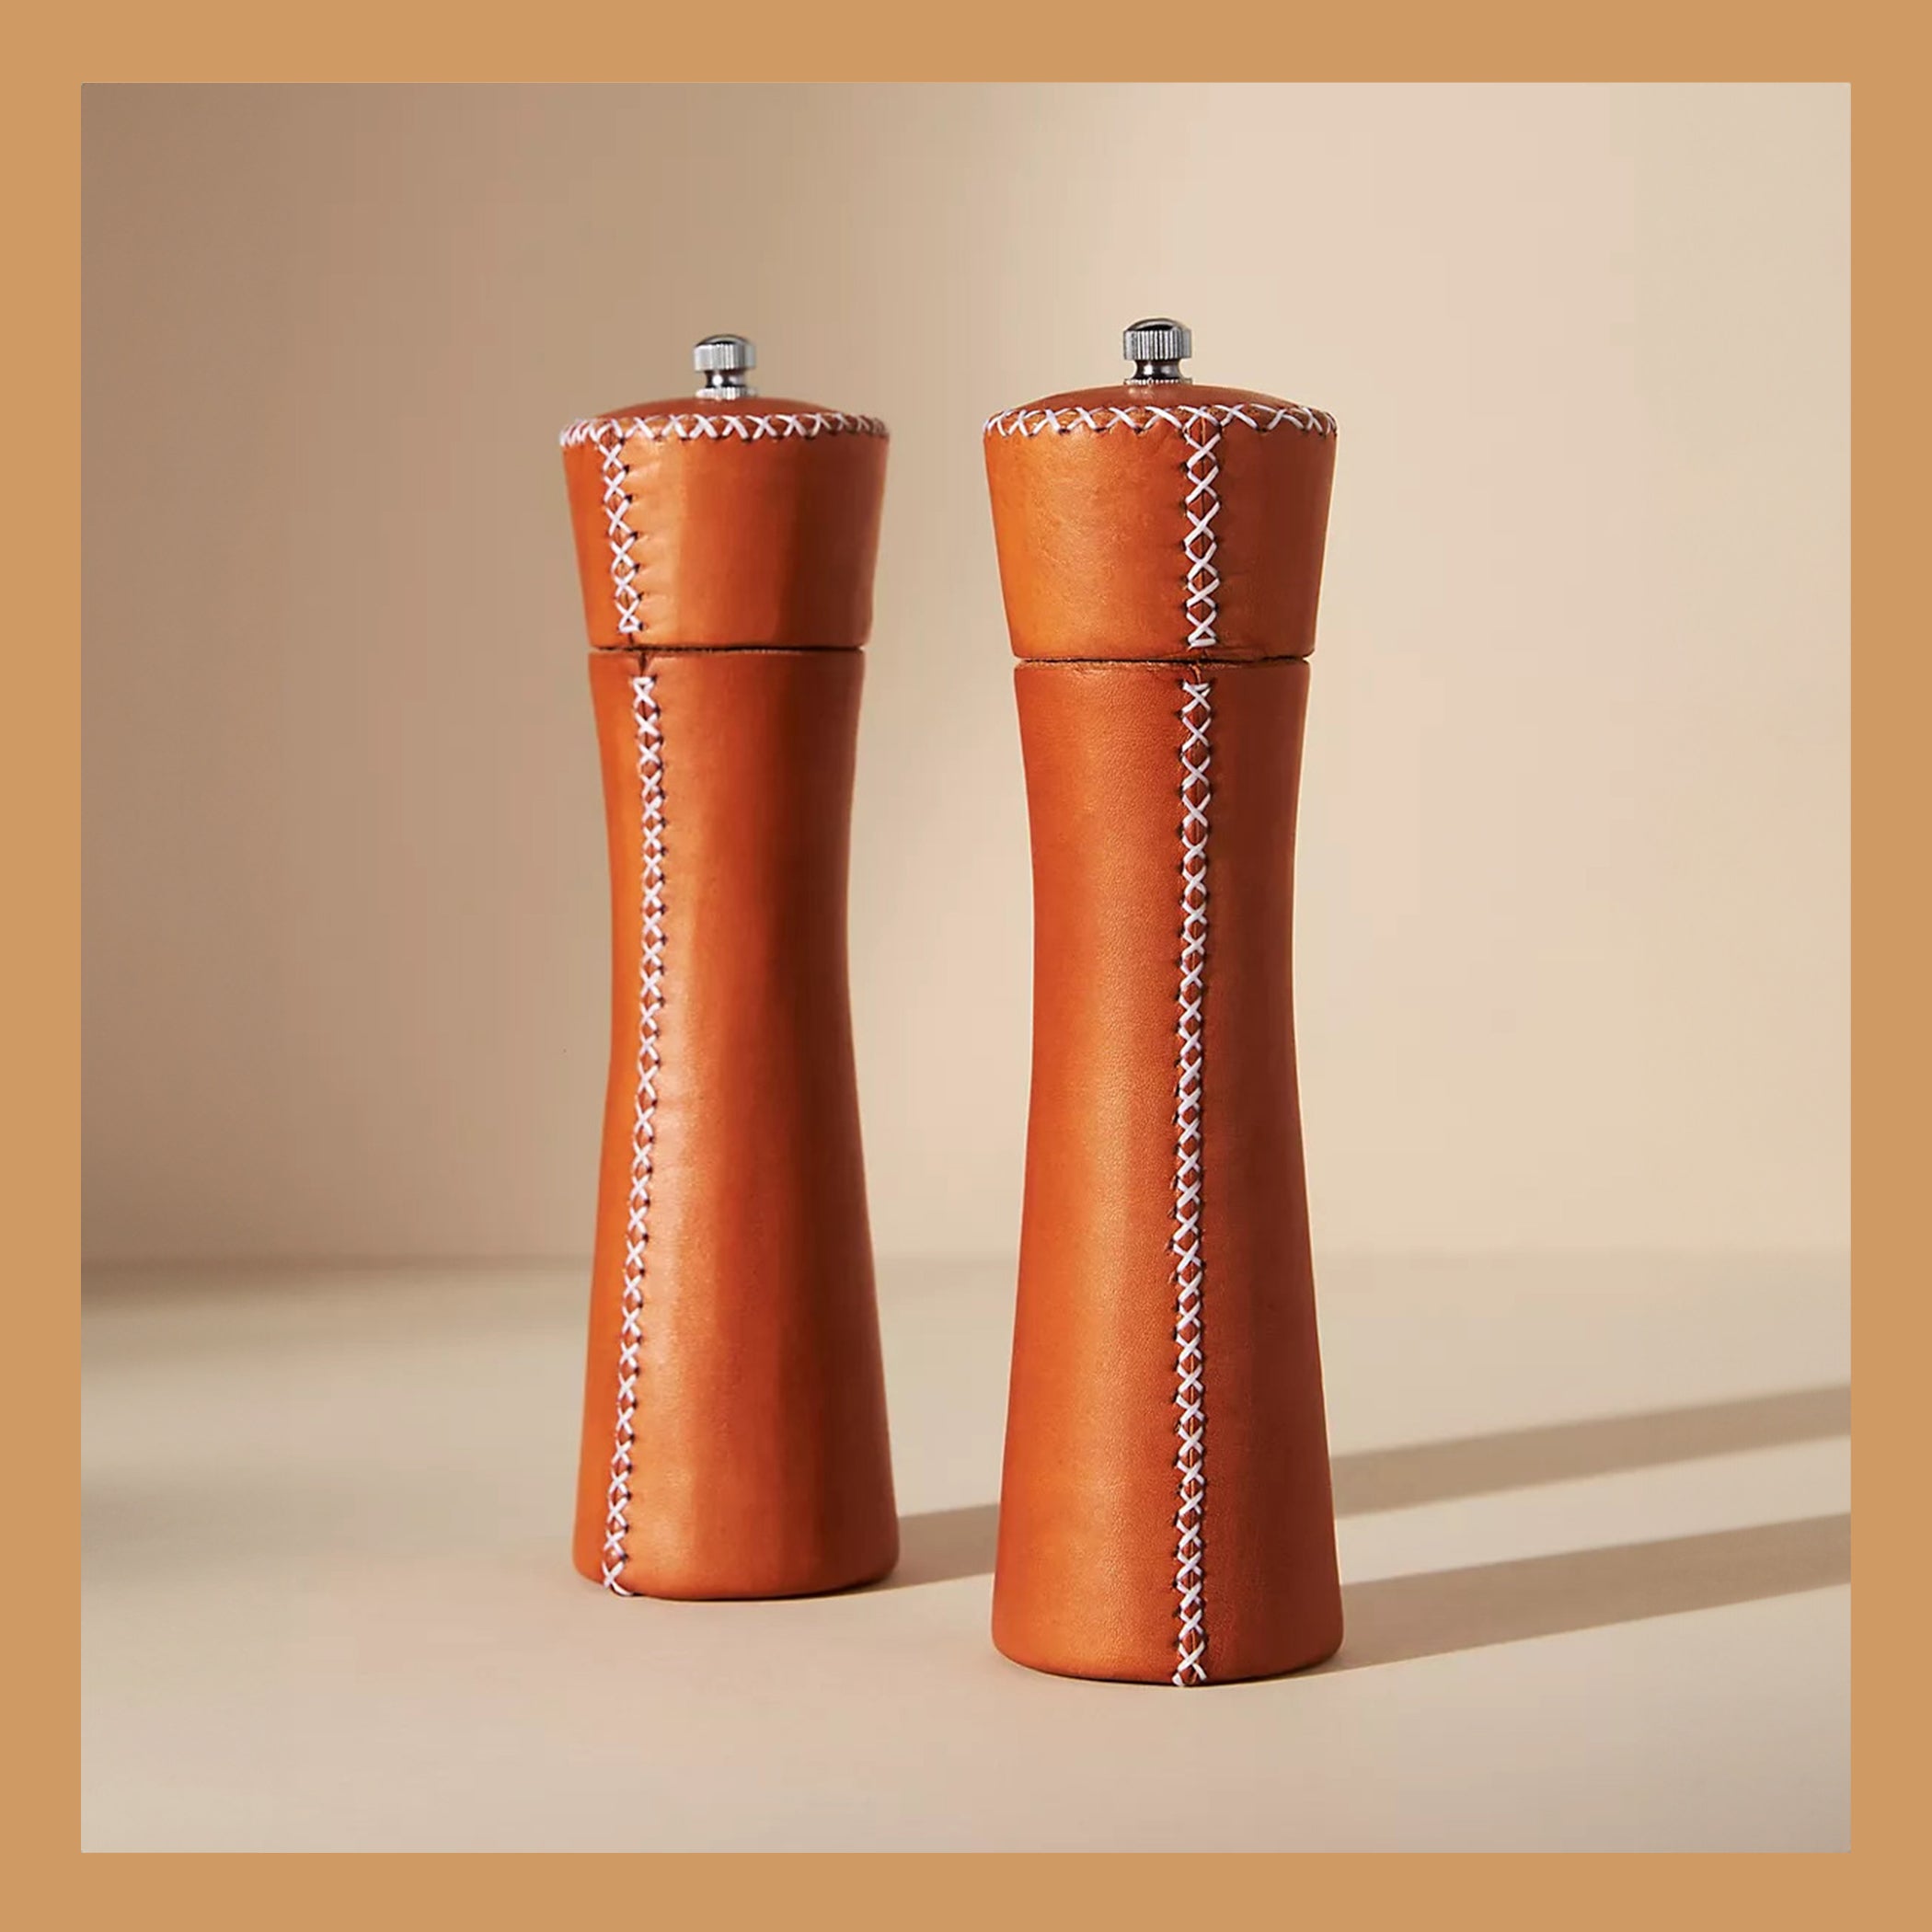 10 Salt and pepper grinder set designs for the modern interior